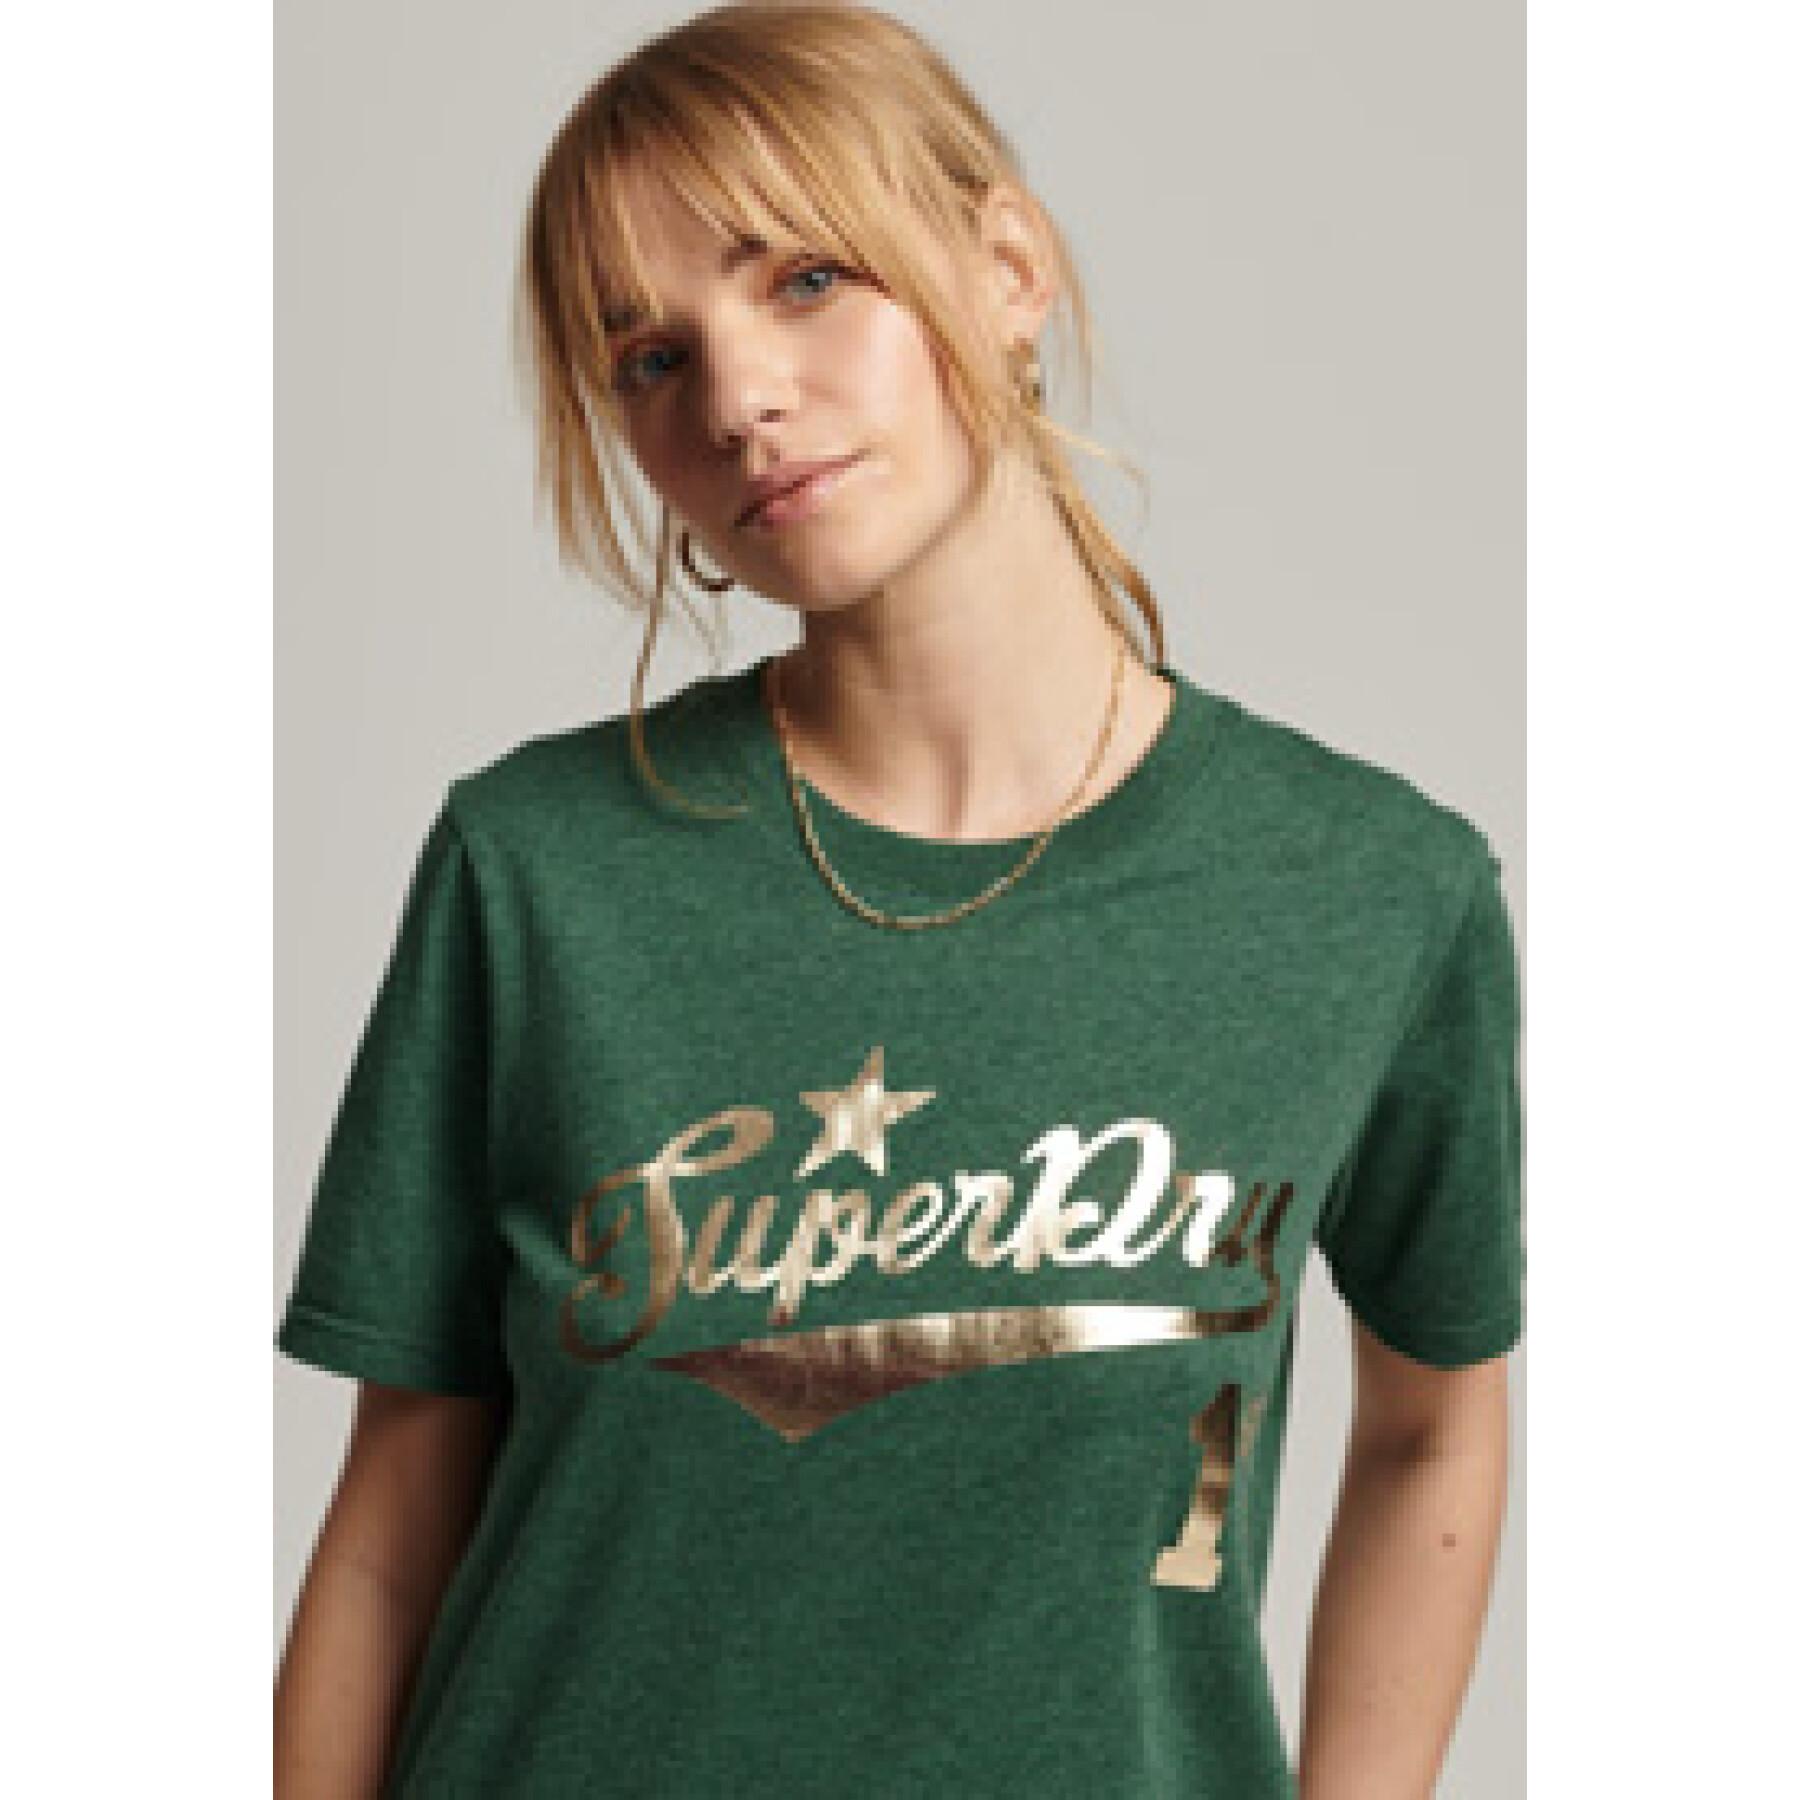 Koszulka z krótkim rękawem dla kobiet Superdry Vintage Script Style College